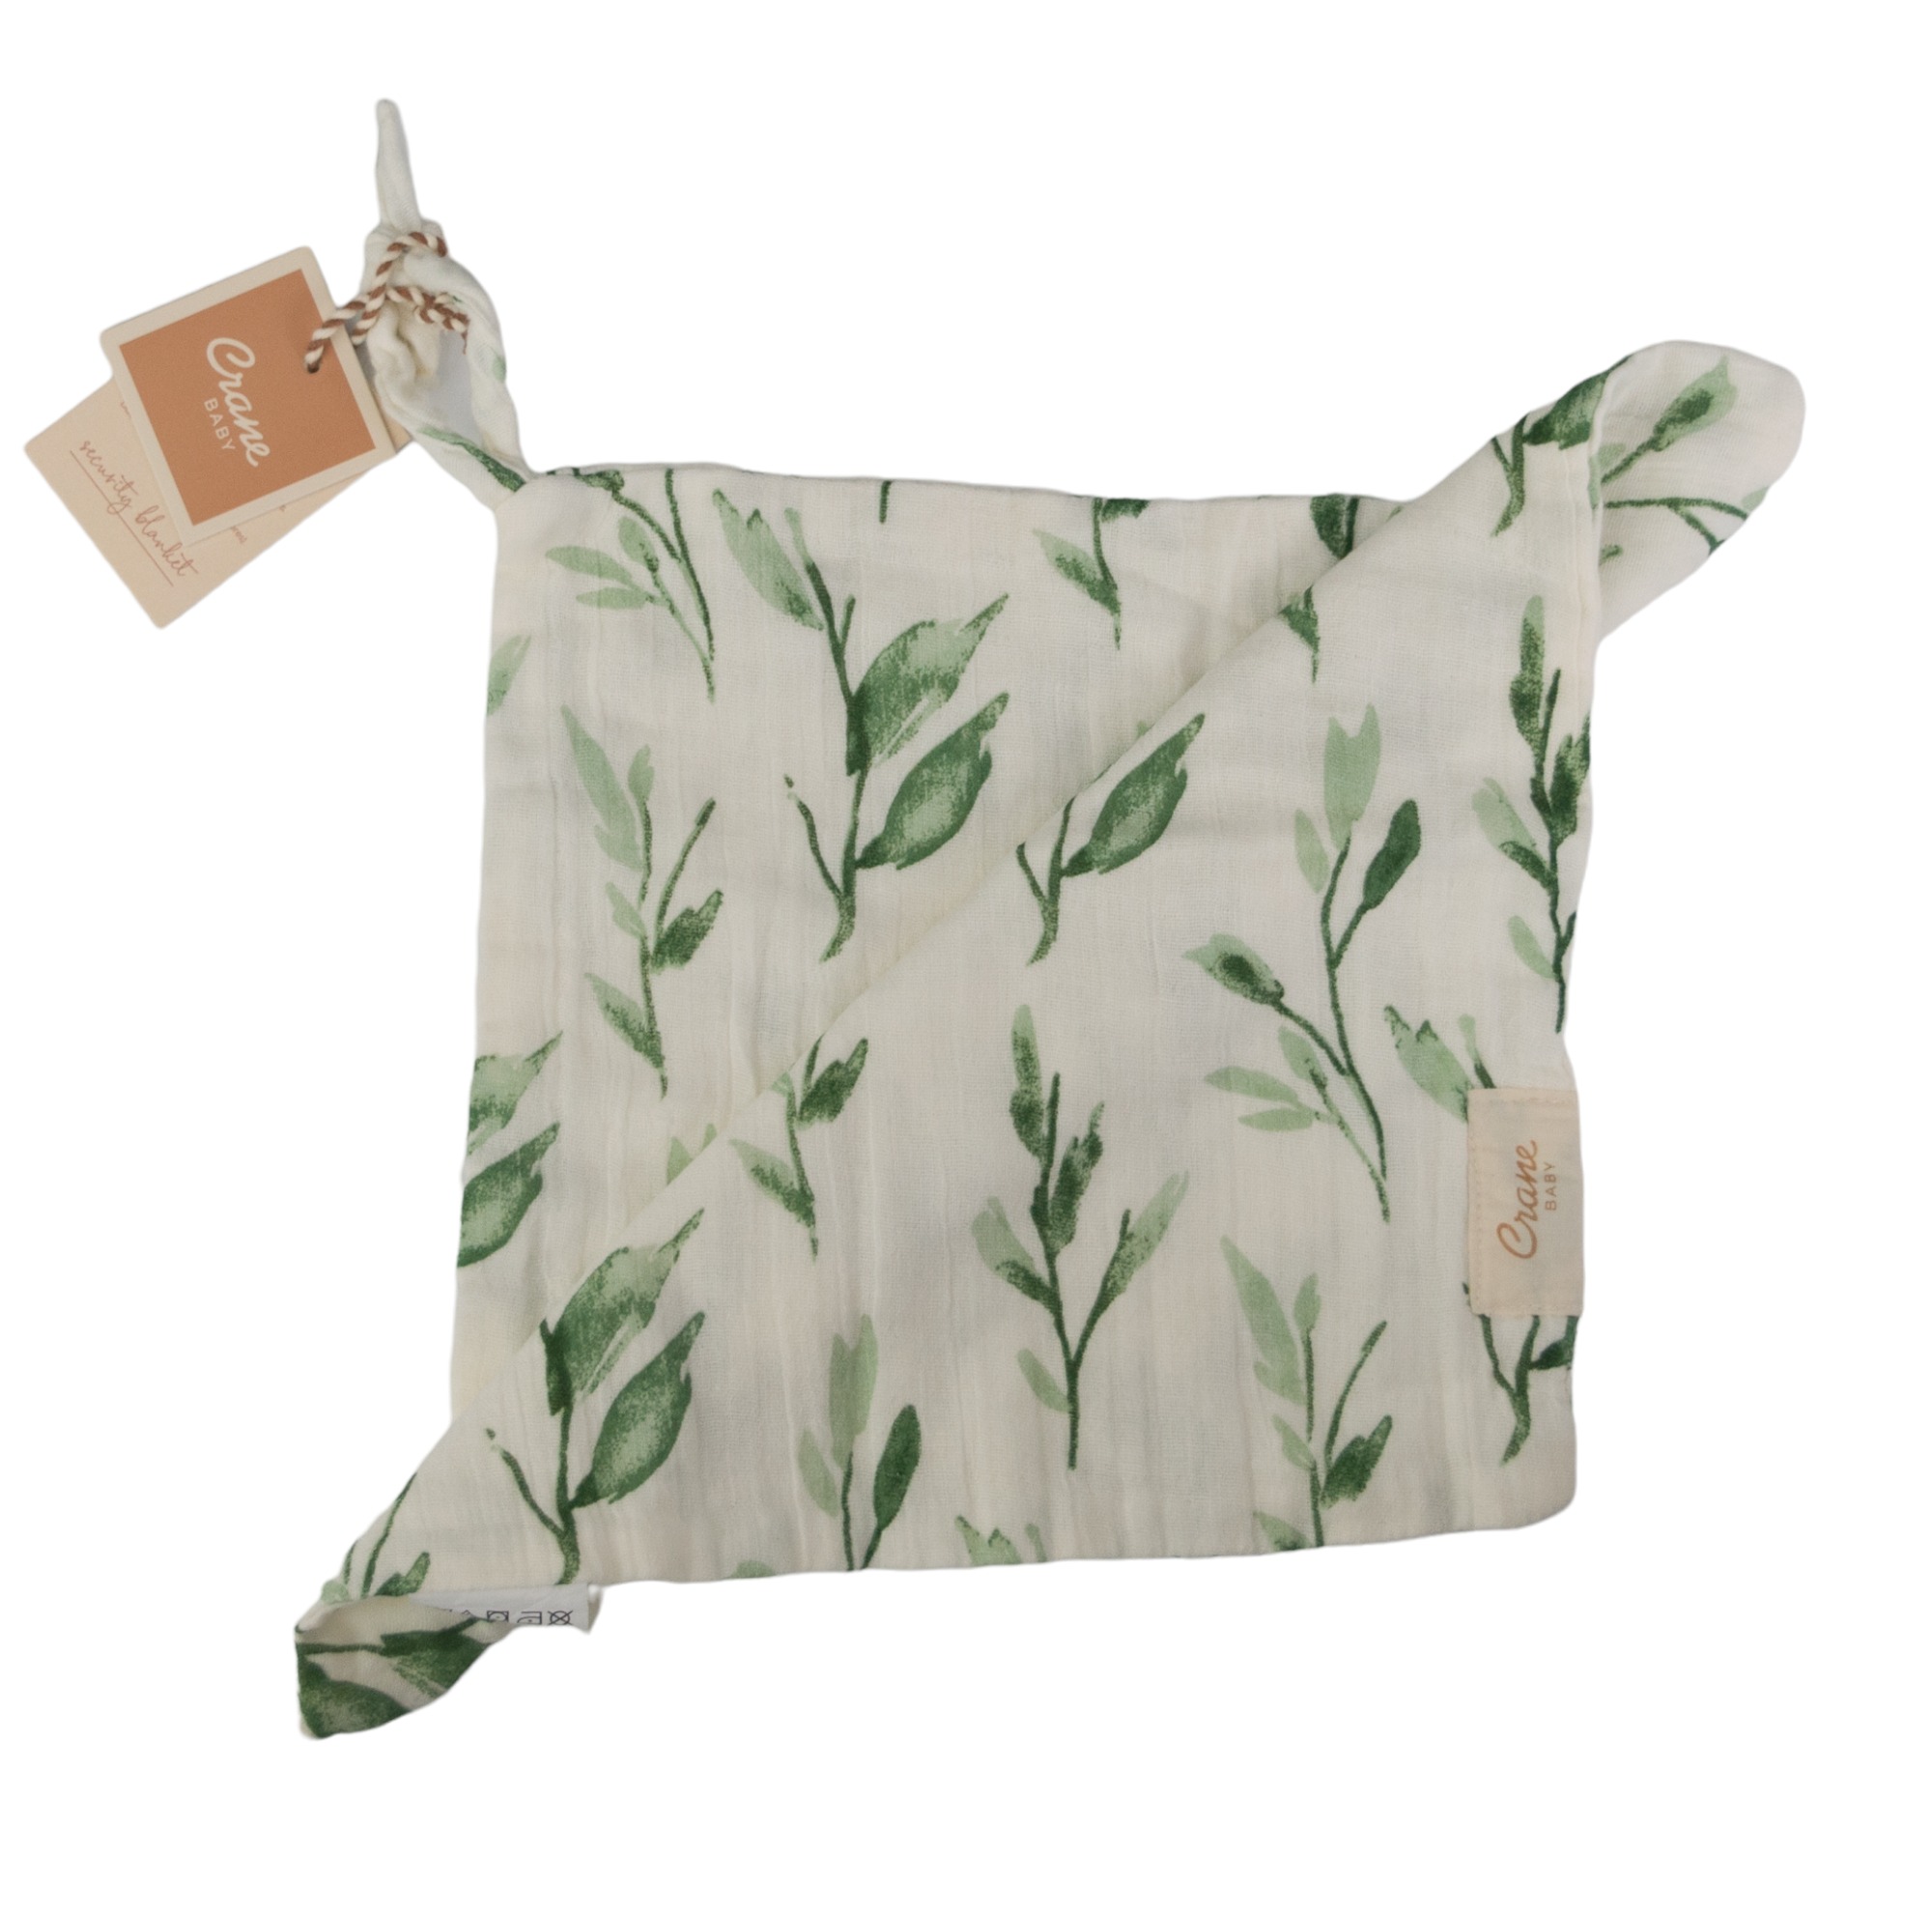 Crane Baby Muslin Security Blanket - Leaf Print